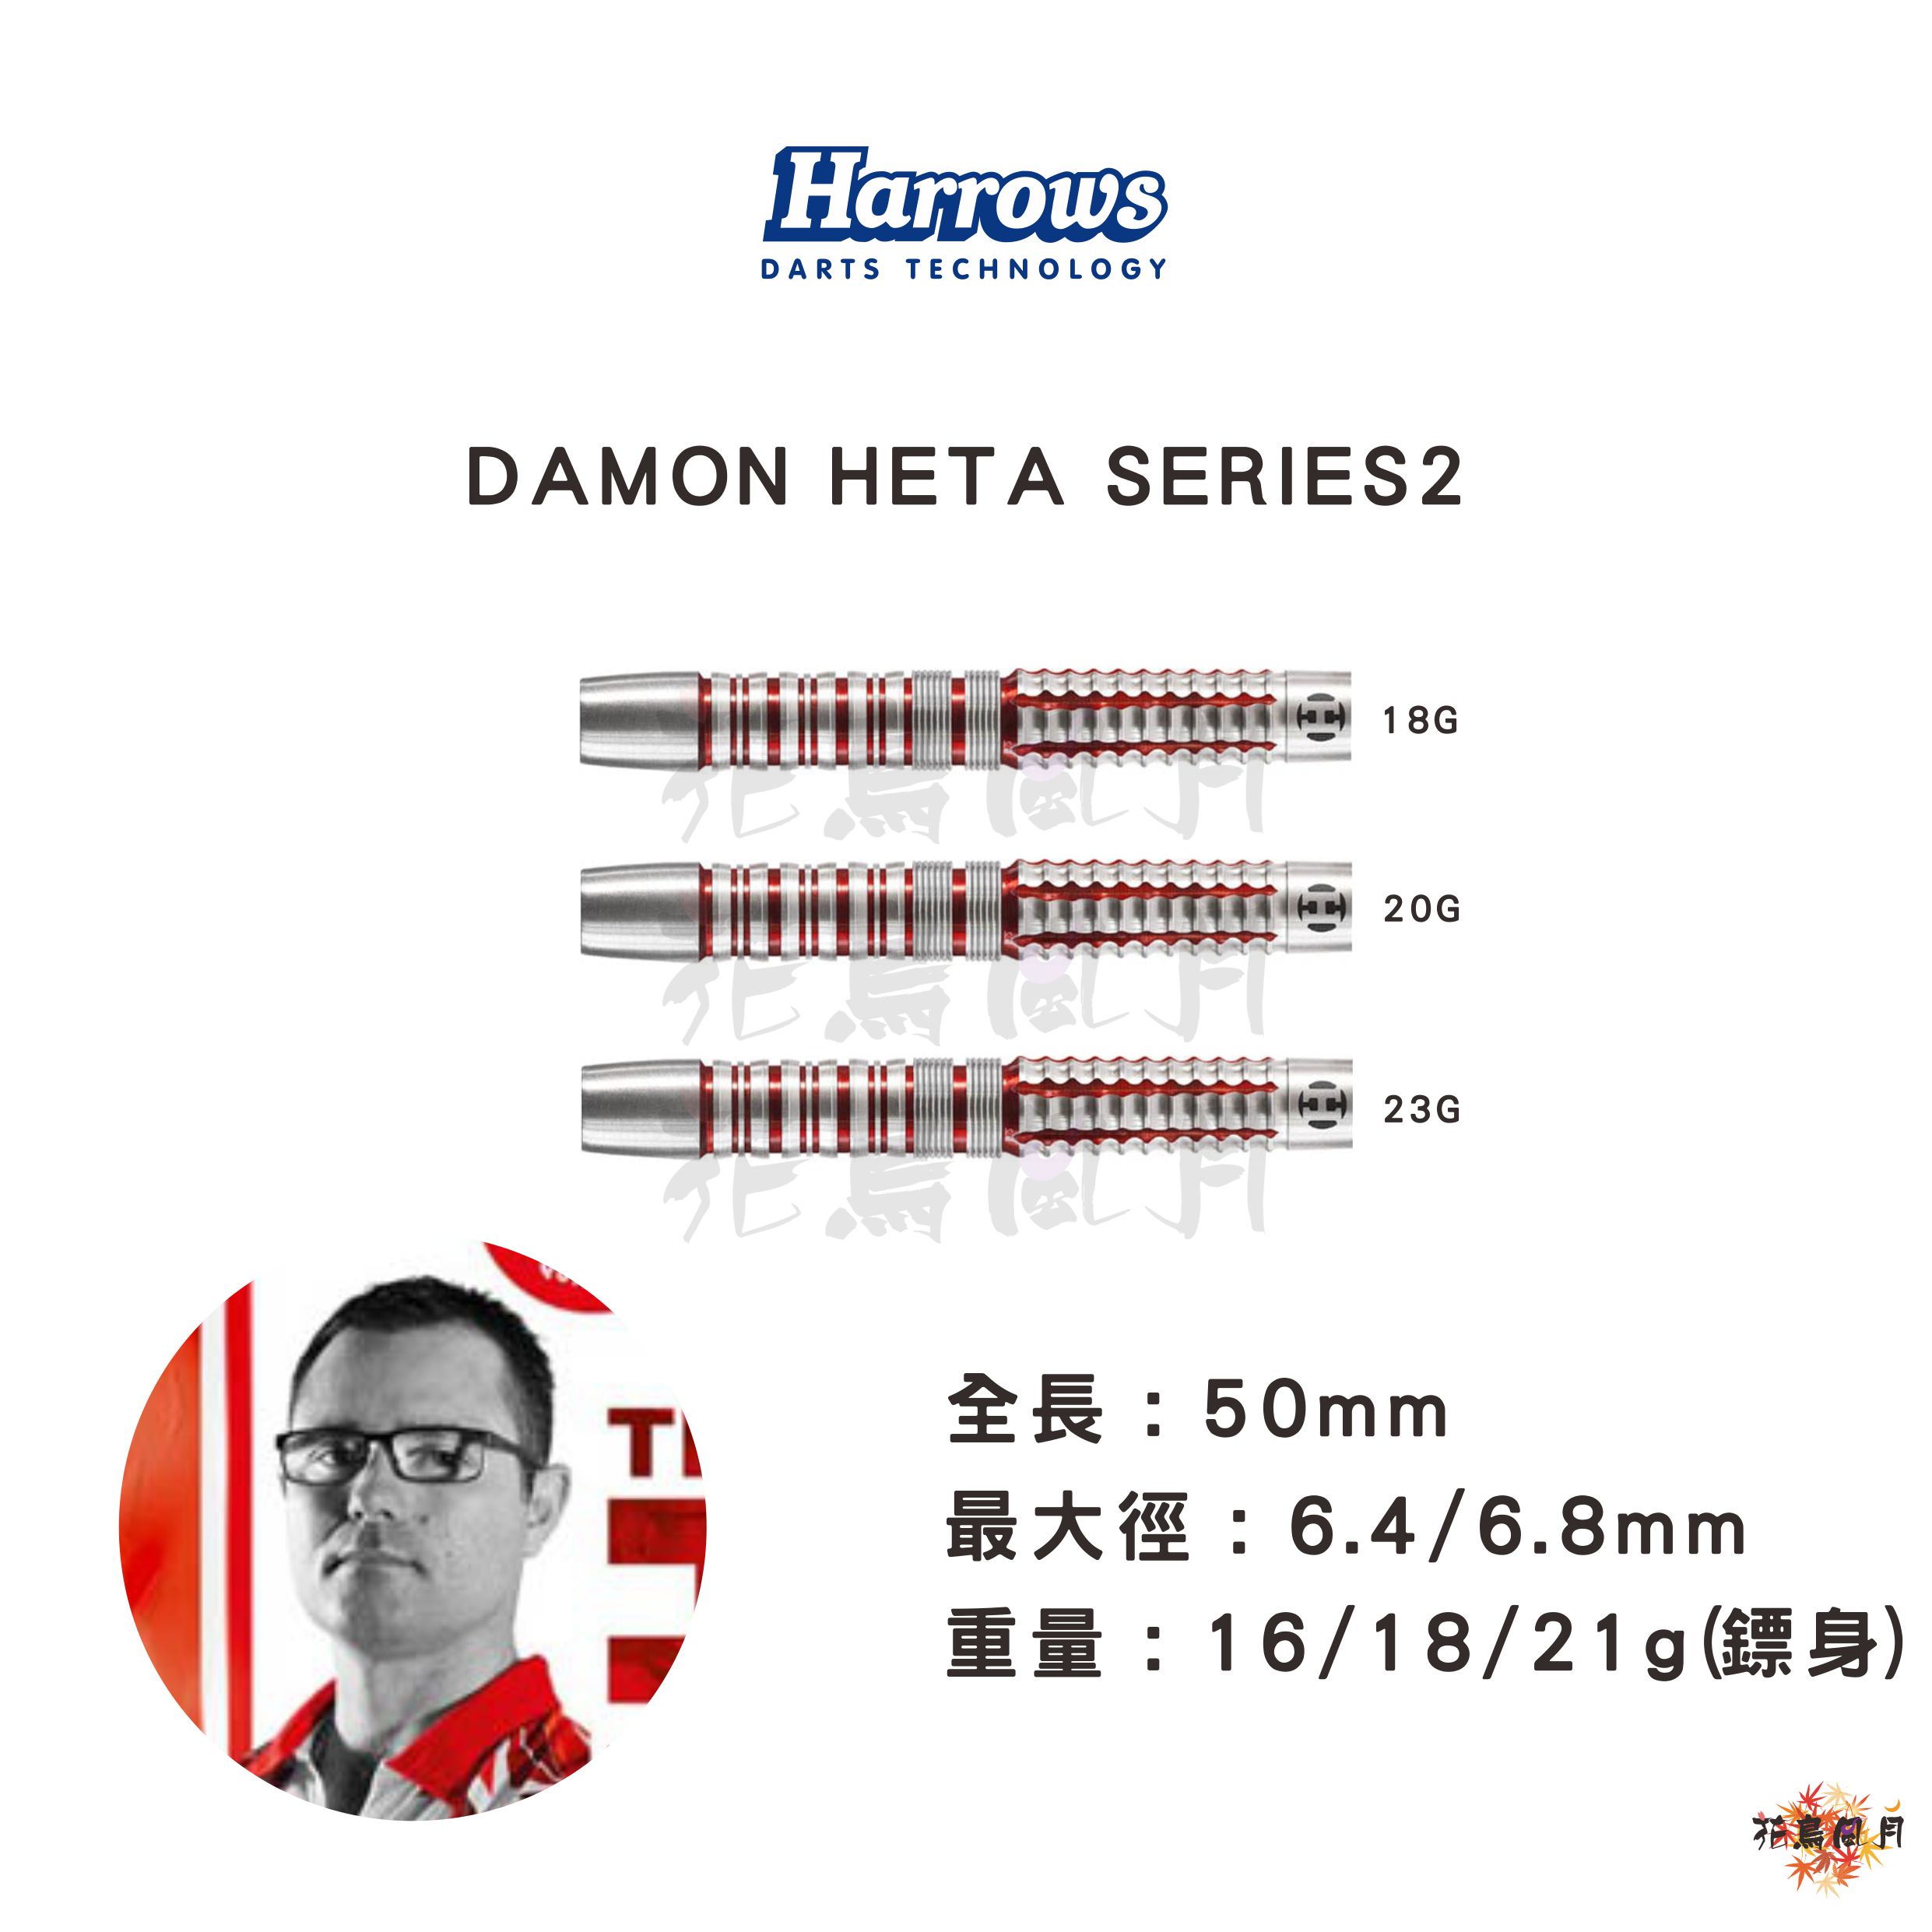 Harrowsハローズ-DAMON-HETAデイモン・ヘタ-SERIES2.jpg